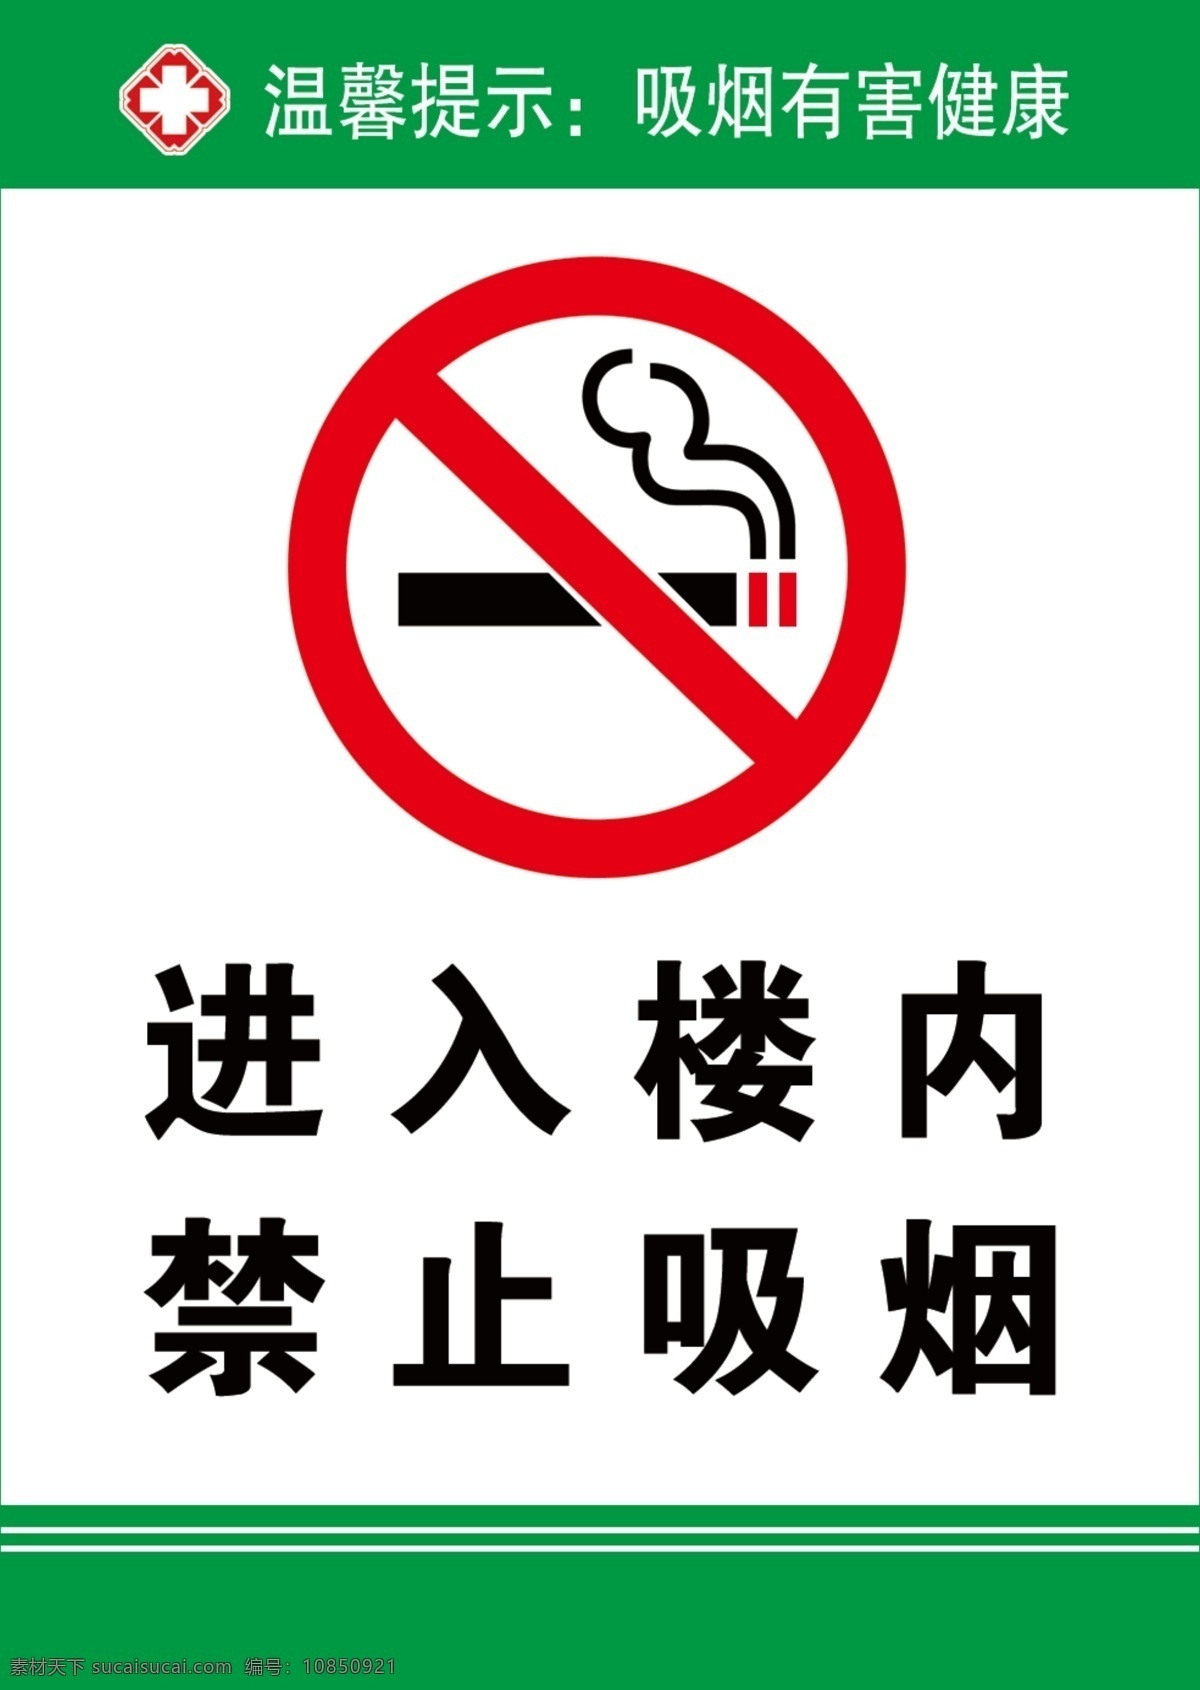 进入 楼 内 禁止吸烟 控烟 进入楼内 医院禁止吸烟 psd源文件